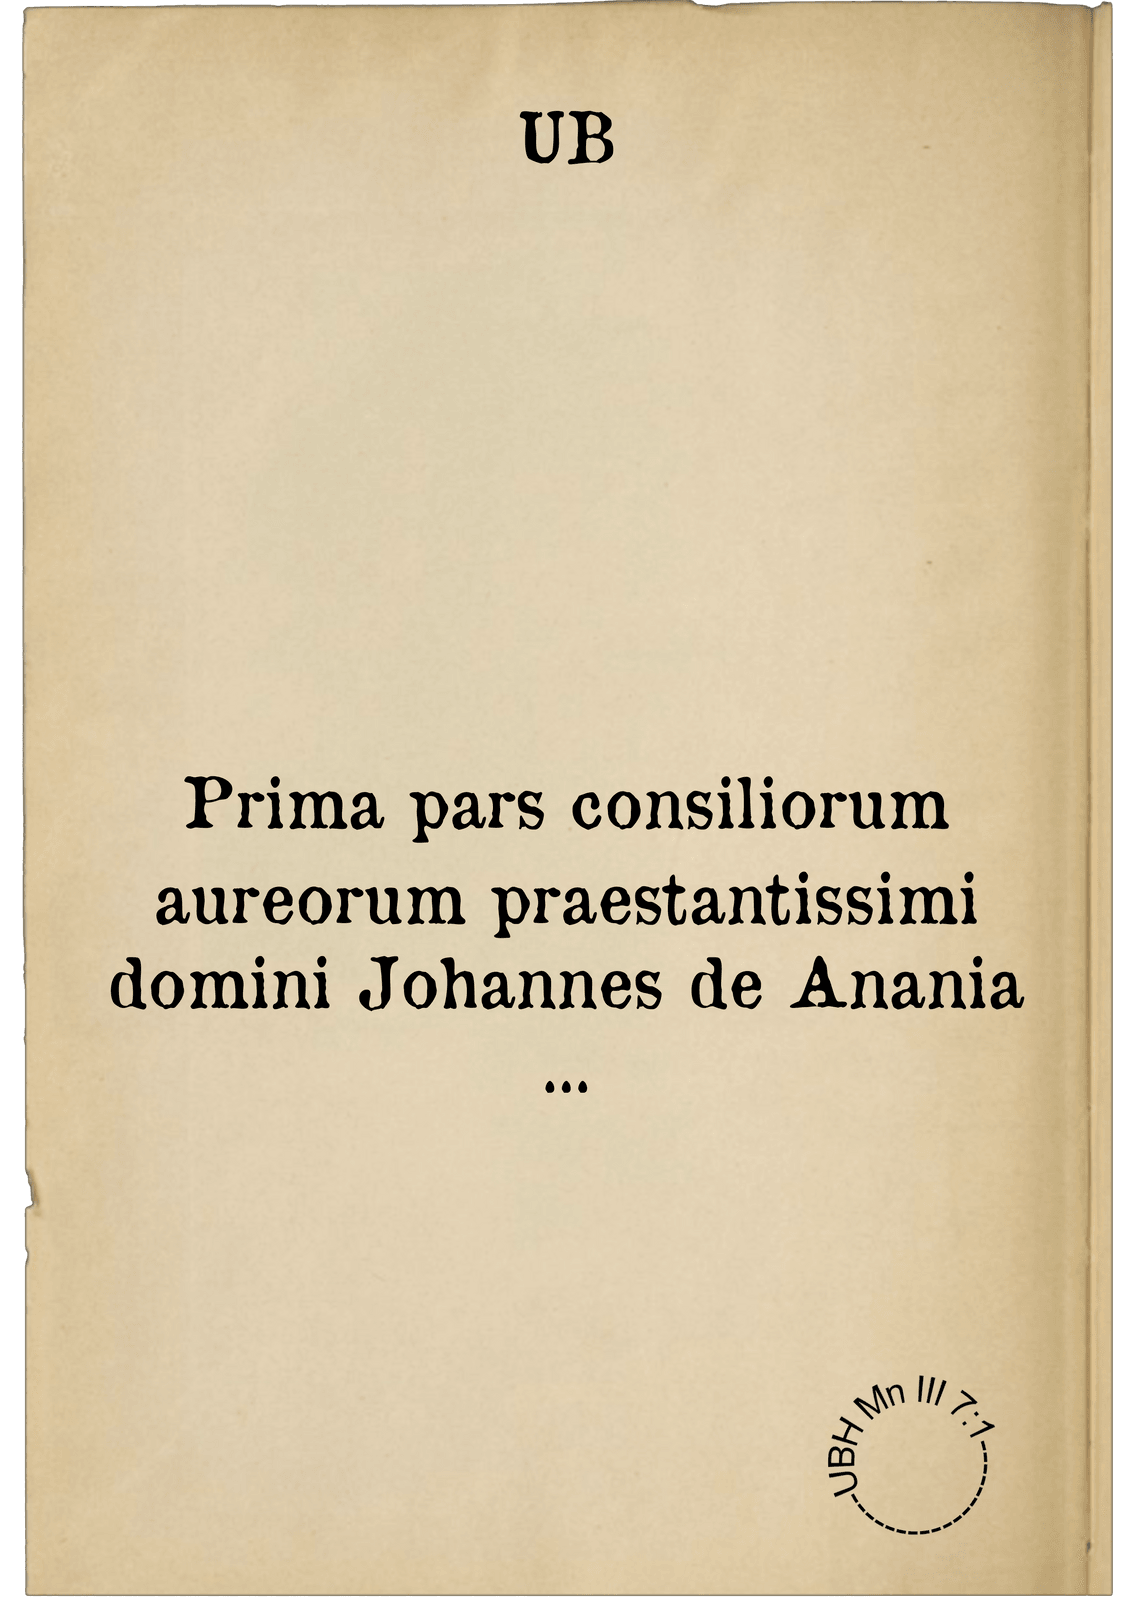 Prima pars consiliorum aureorum praestantissimi domini Johannes de Anania ...